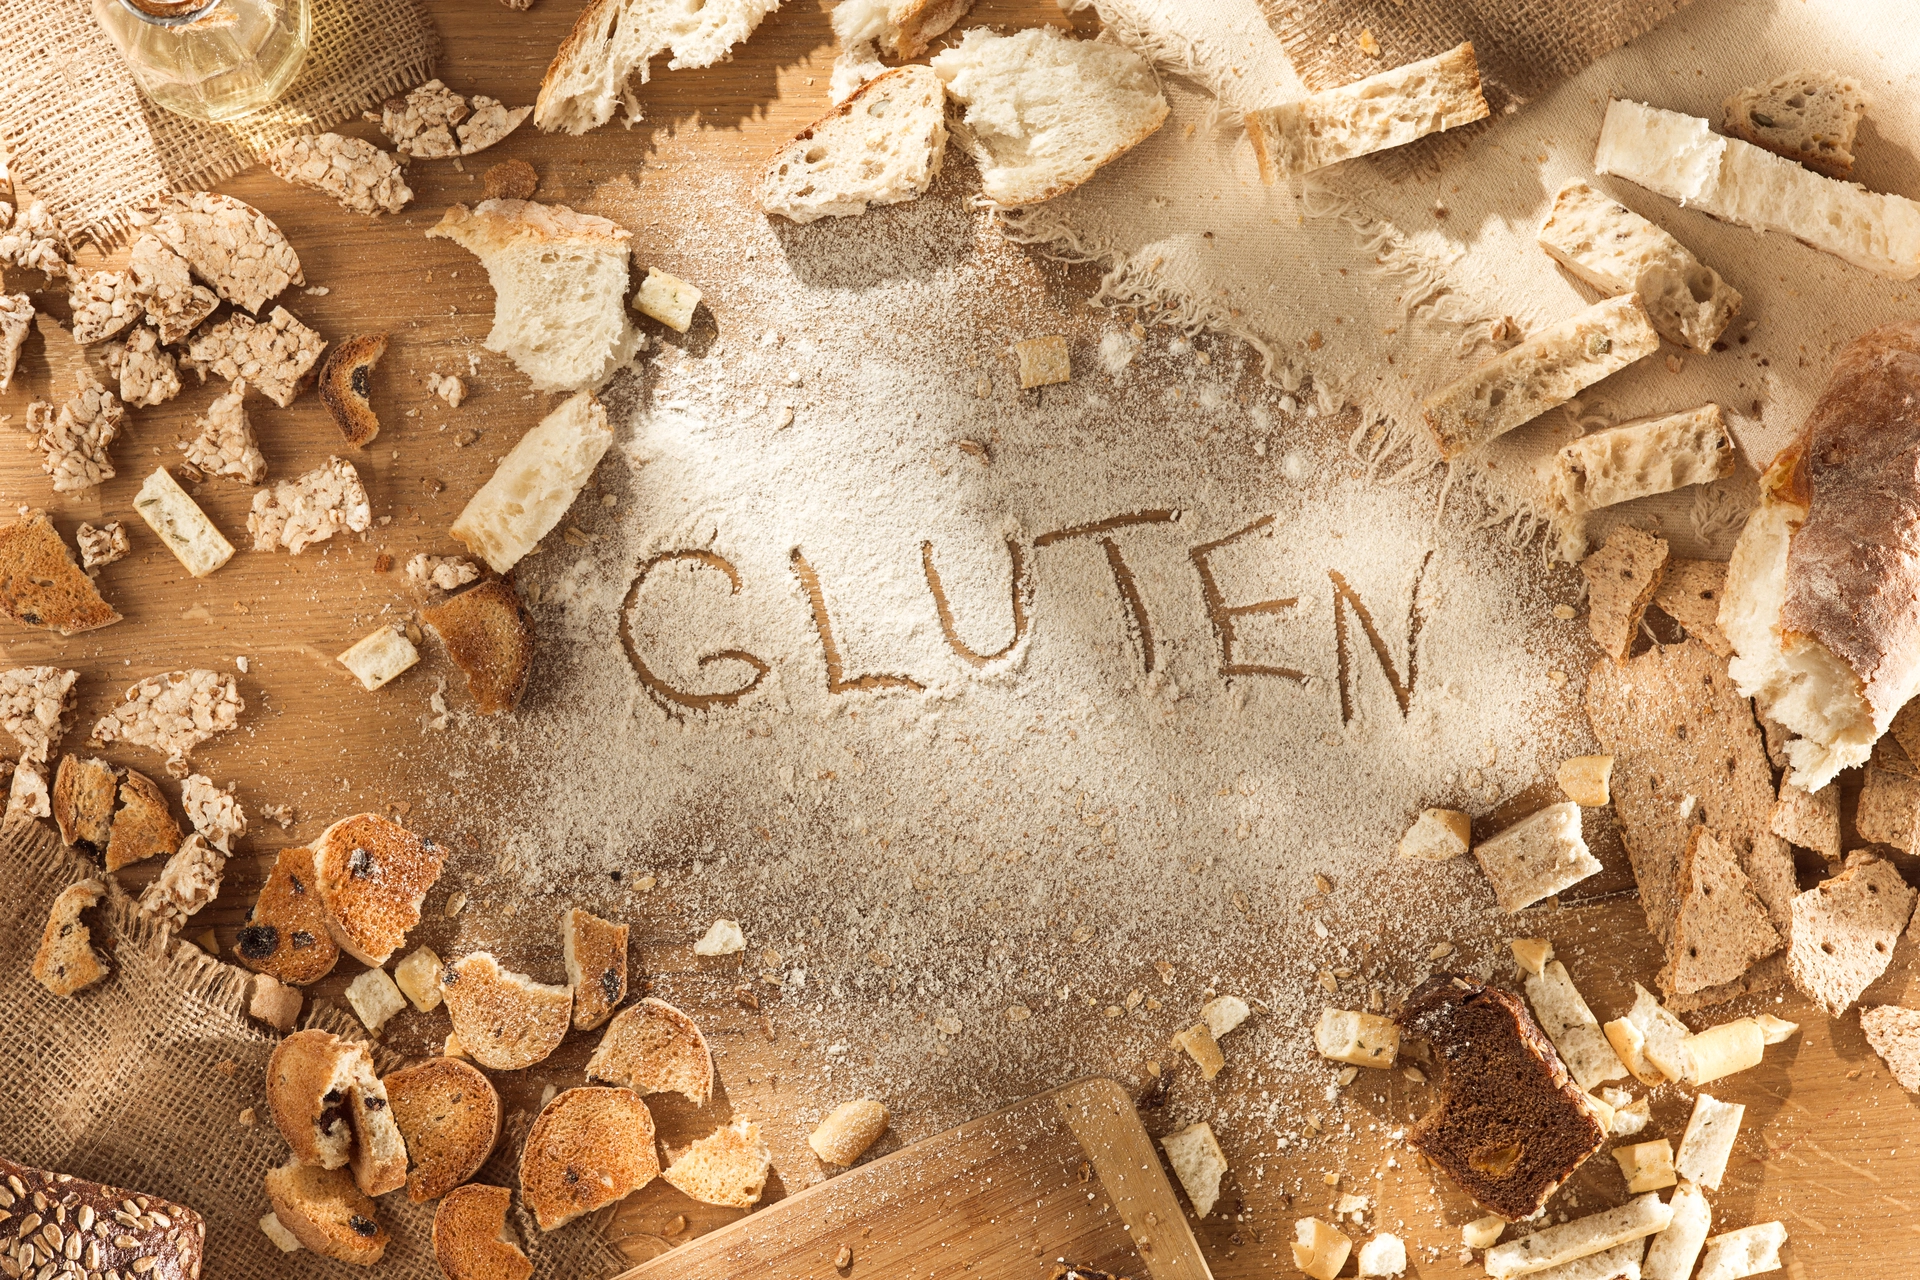 intolerancia a gluten